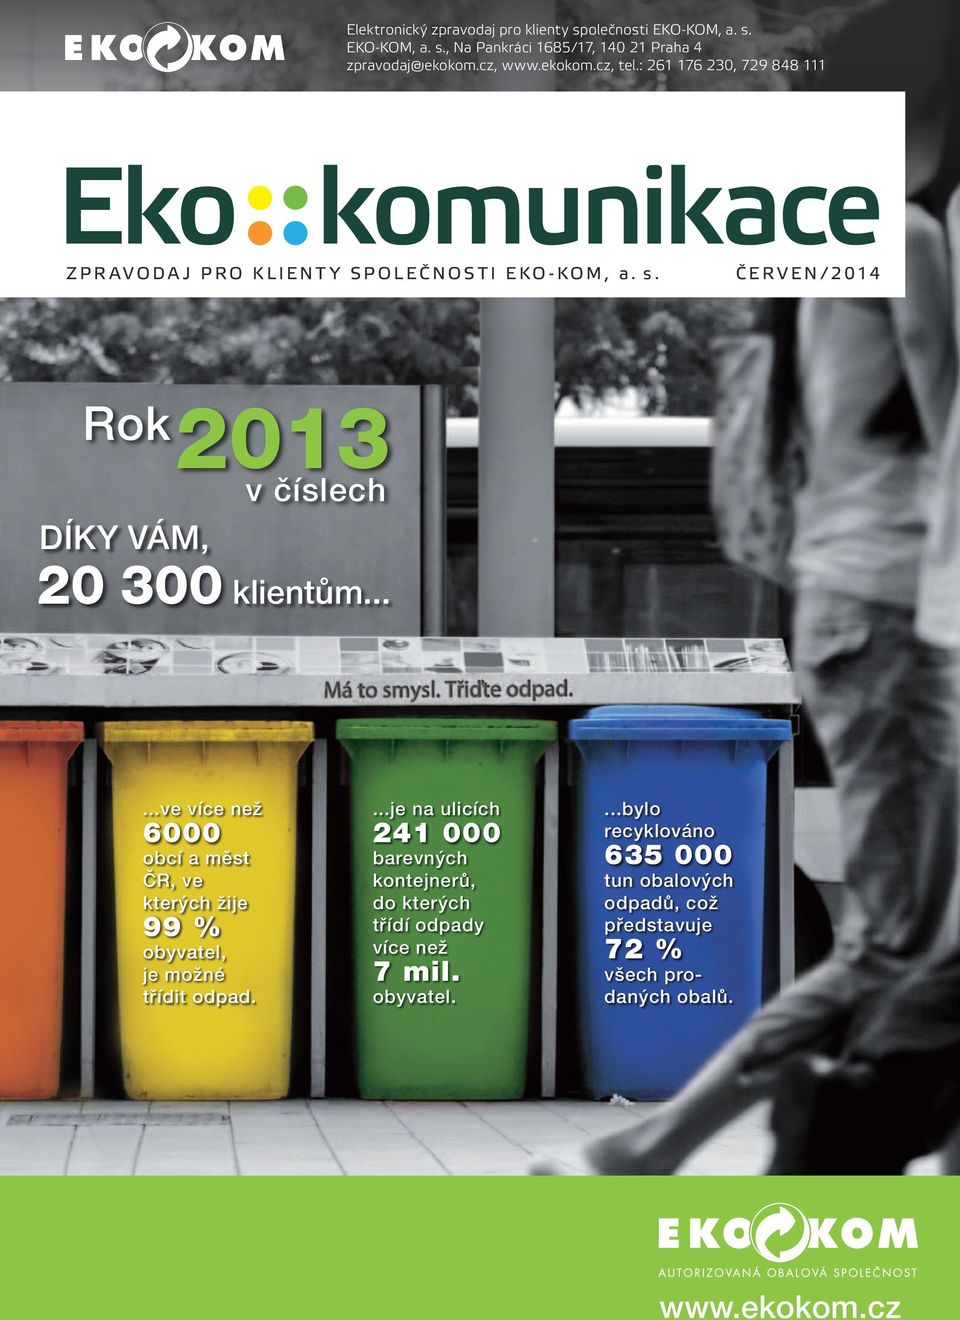 ..ve více než 6000 obcí a měst ČR, ve kterých žije 99 % obyvatel, je možné třídit odpad.